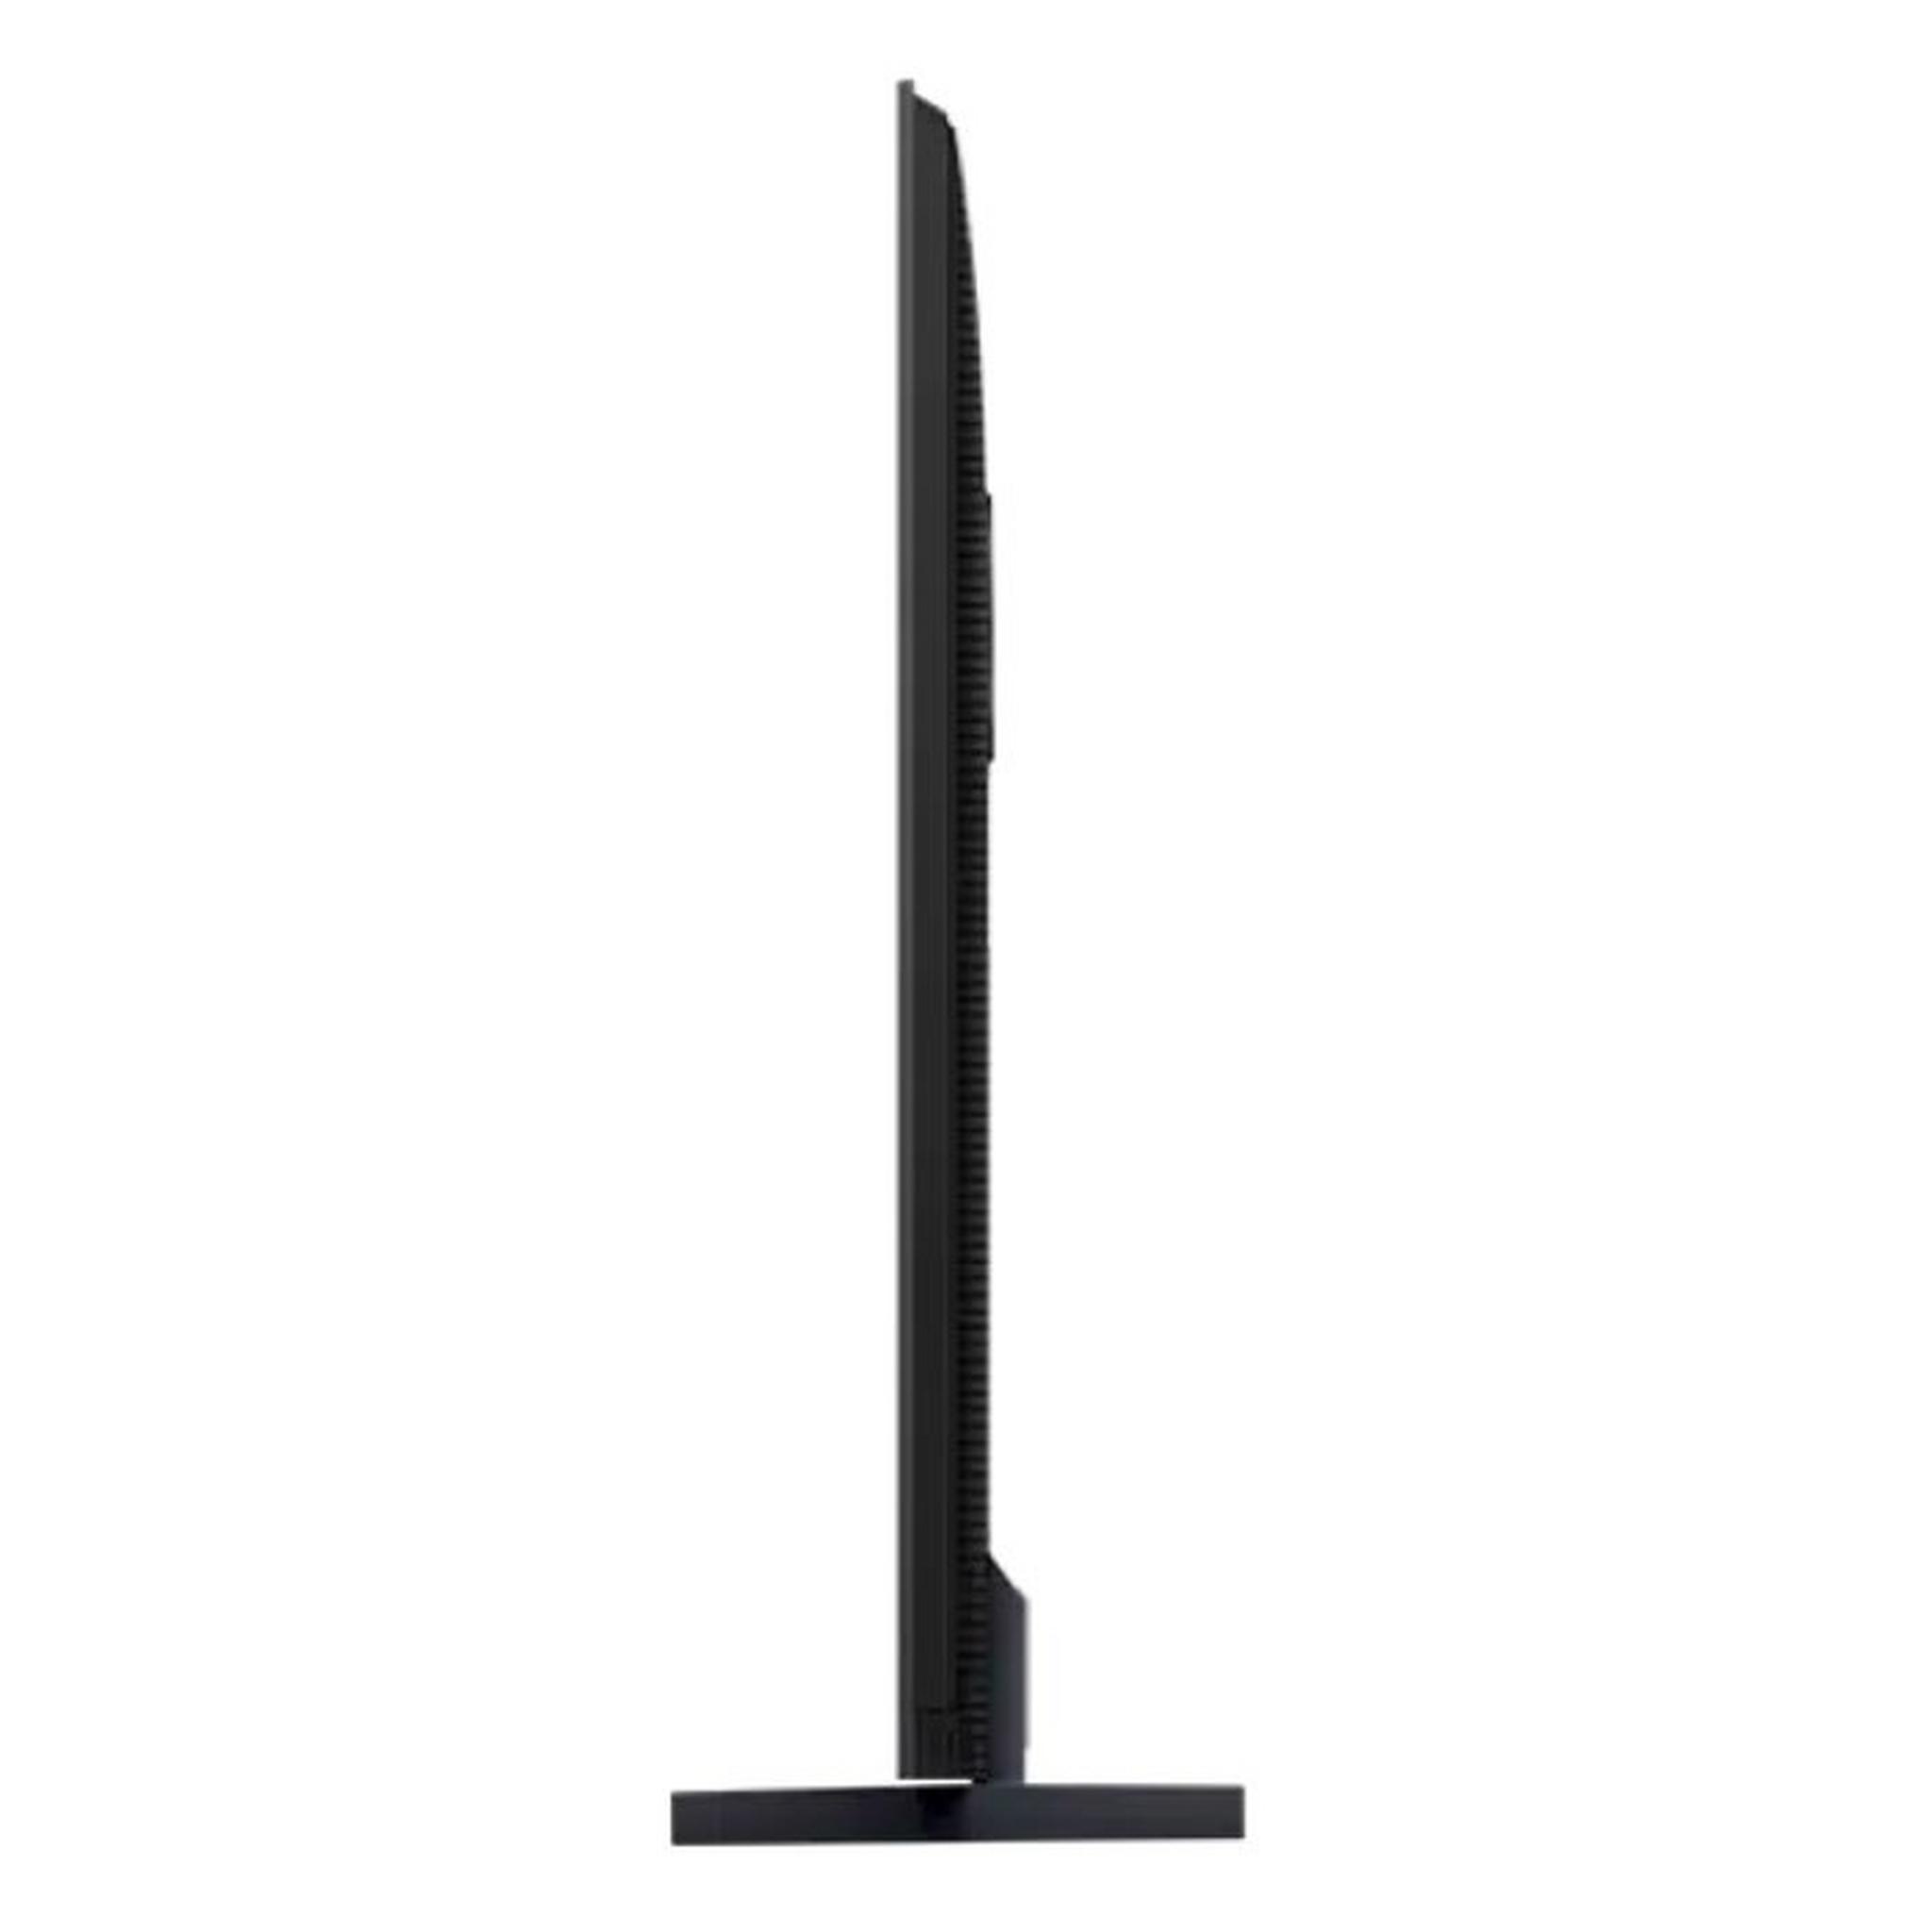 TCL 85-inch UHD Mini LED Google Smart TV, 144 HZ, 85C755 – Black